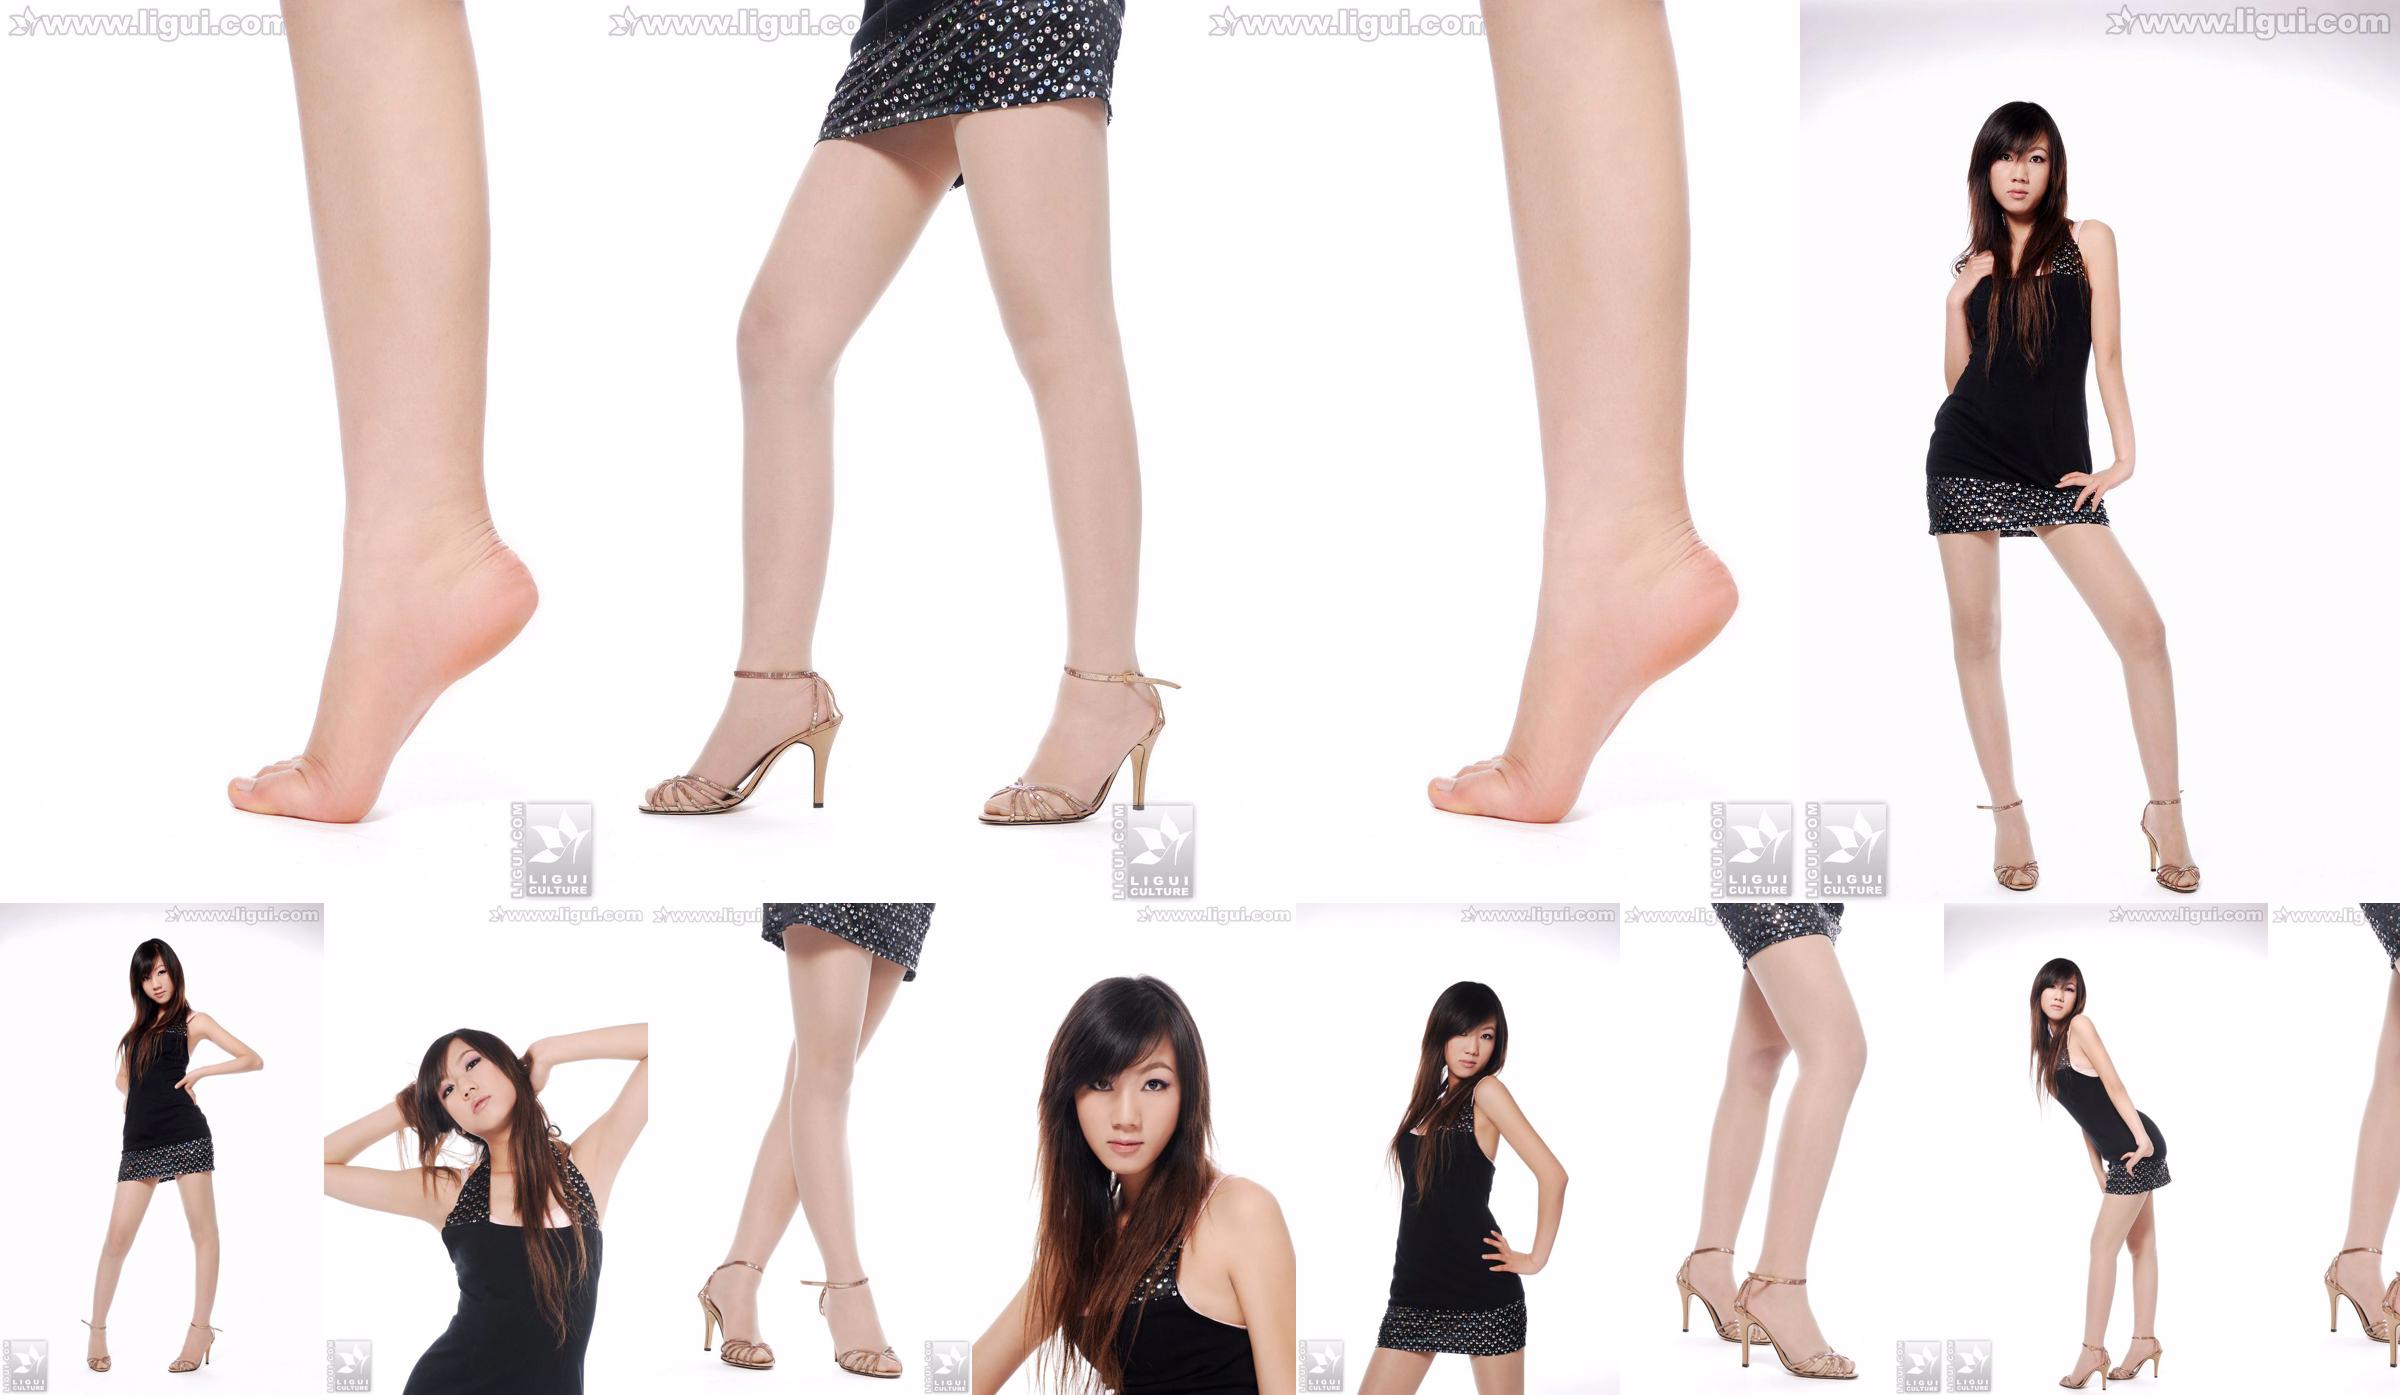 Modelo Sheng Chao "lindo novo show de pé de jade de salto alto" [Sheng LiGui] Foto de belas pernas e pé de jade No.32f773 Página 1